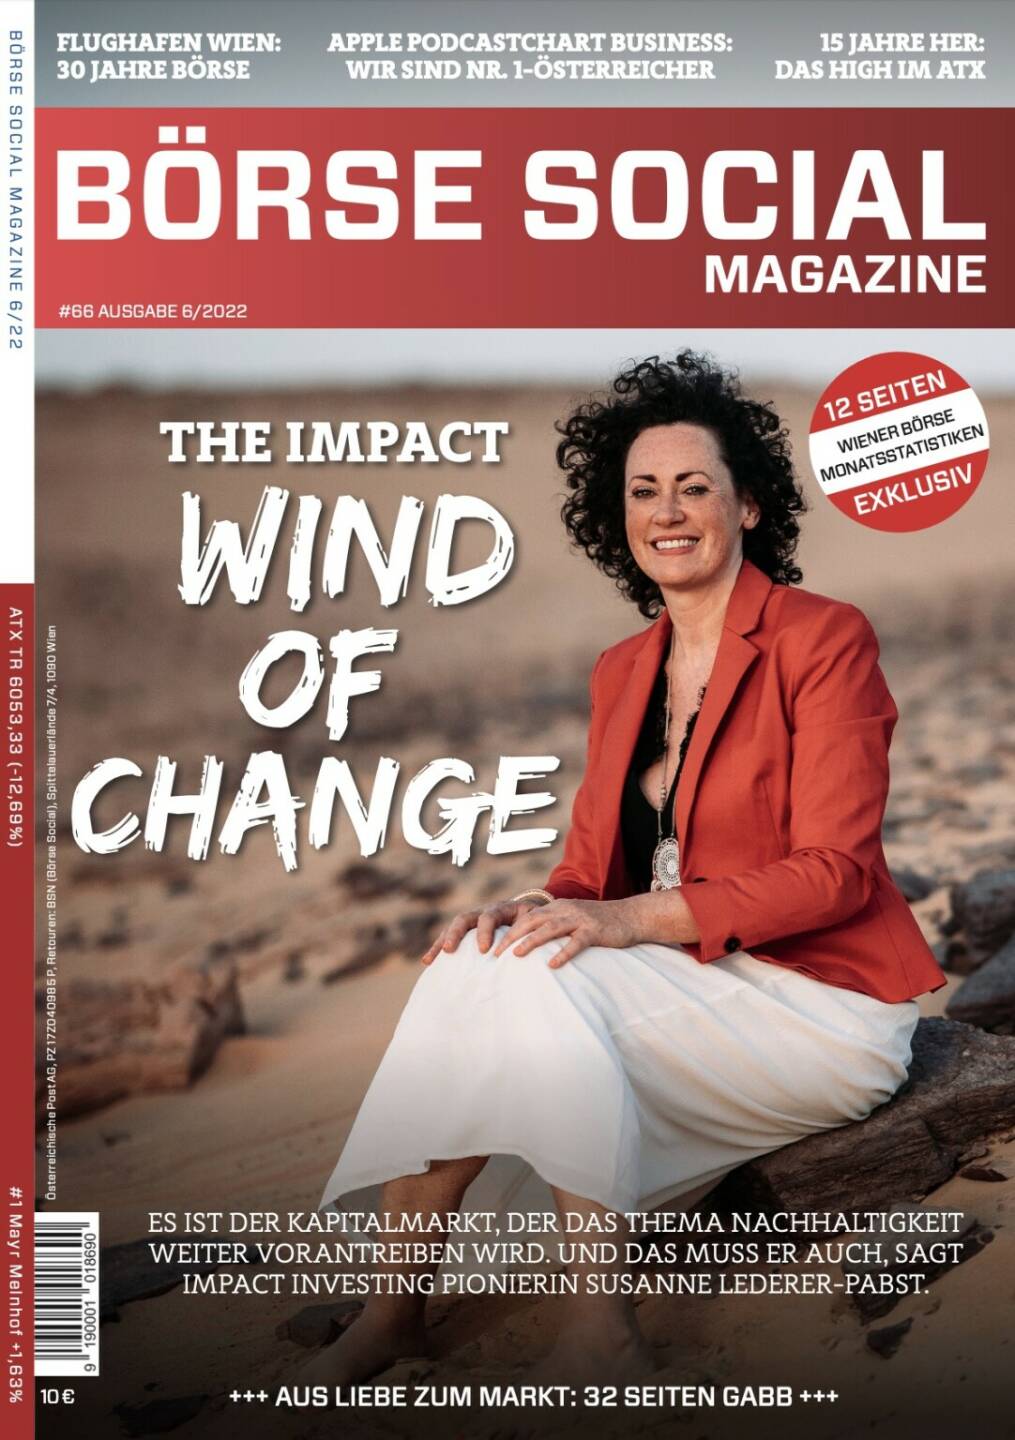 Magazine #66 - The Impact Wind of Change - Es ist Der Kapitalmarkt, der das Thema Nachhaltigkeit weiter vorantreiben wird. Und das muss er auch, sagt impact Investing Pionierin SUsanne Lederer-Pabst.